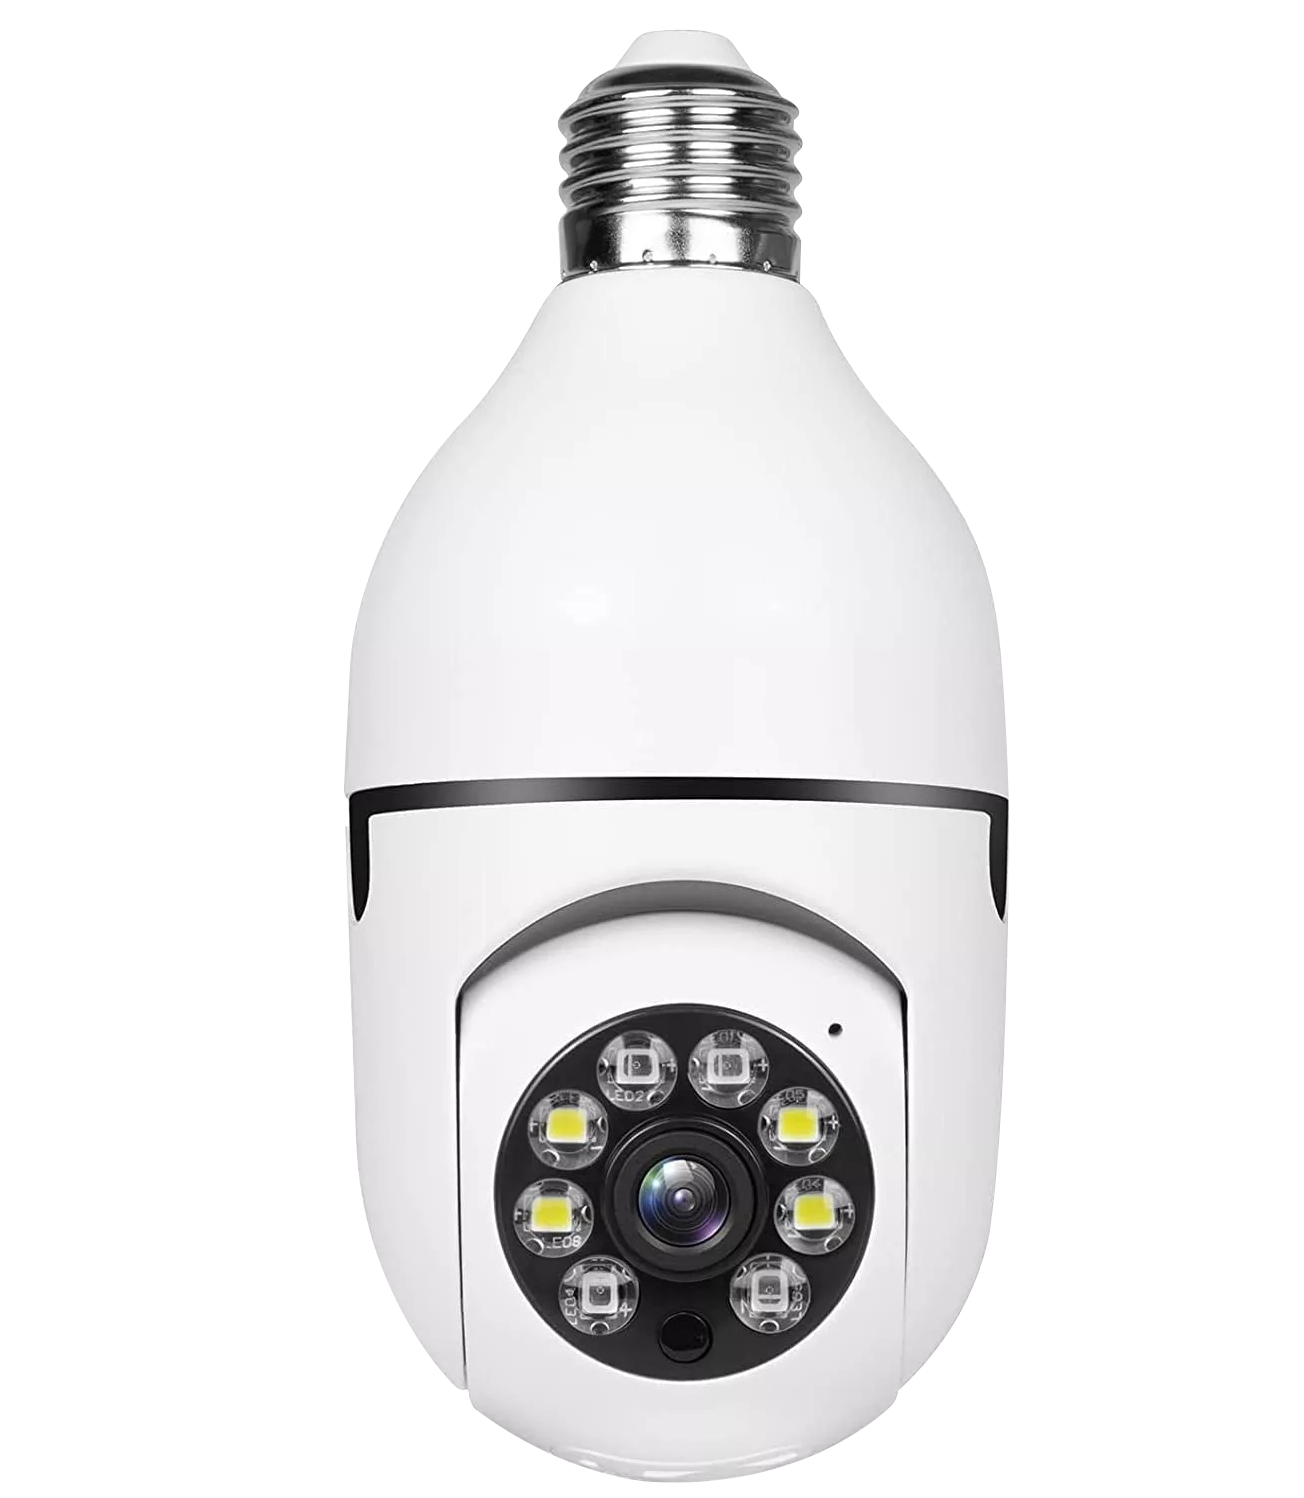 A6 żarówka kamera bezprzewodowa 1080p 360 stopni panoramiczna inteligentna HD WiFi Cam noc Wersja domowa bezpieczeństwo IP Surveillance CCTV Kamera LED Aparat z pudełkiem detalicznym